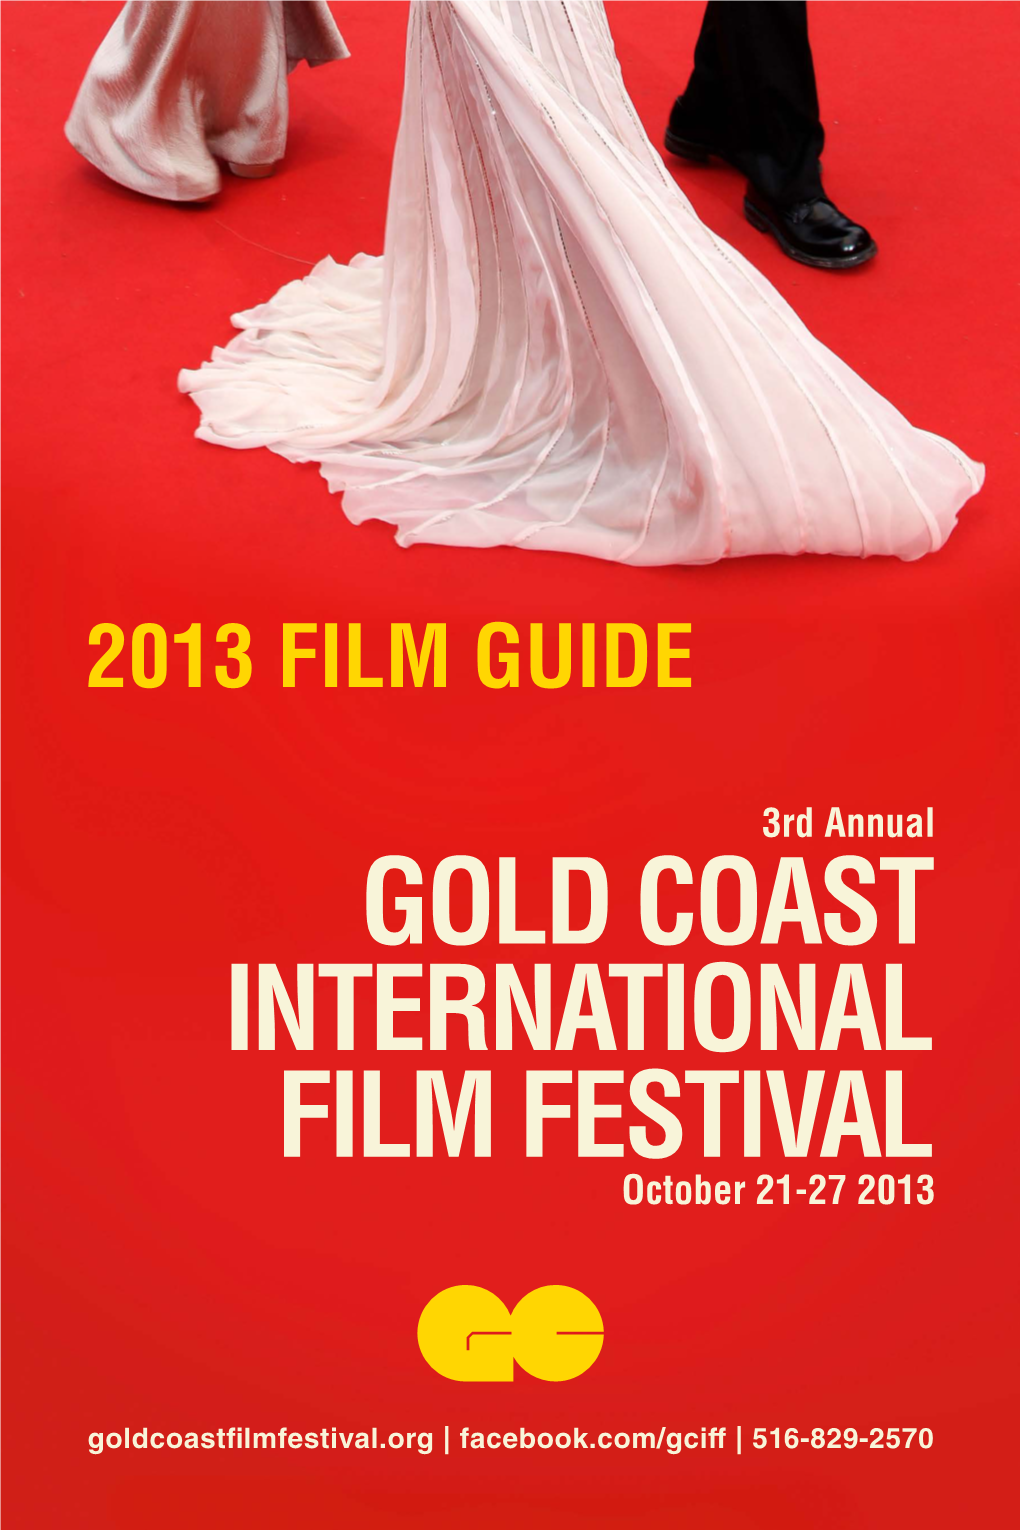 GOLD COAST INTERNATIONAL FILM FESTIVAL October 21-27 2013